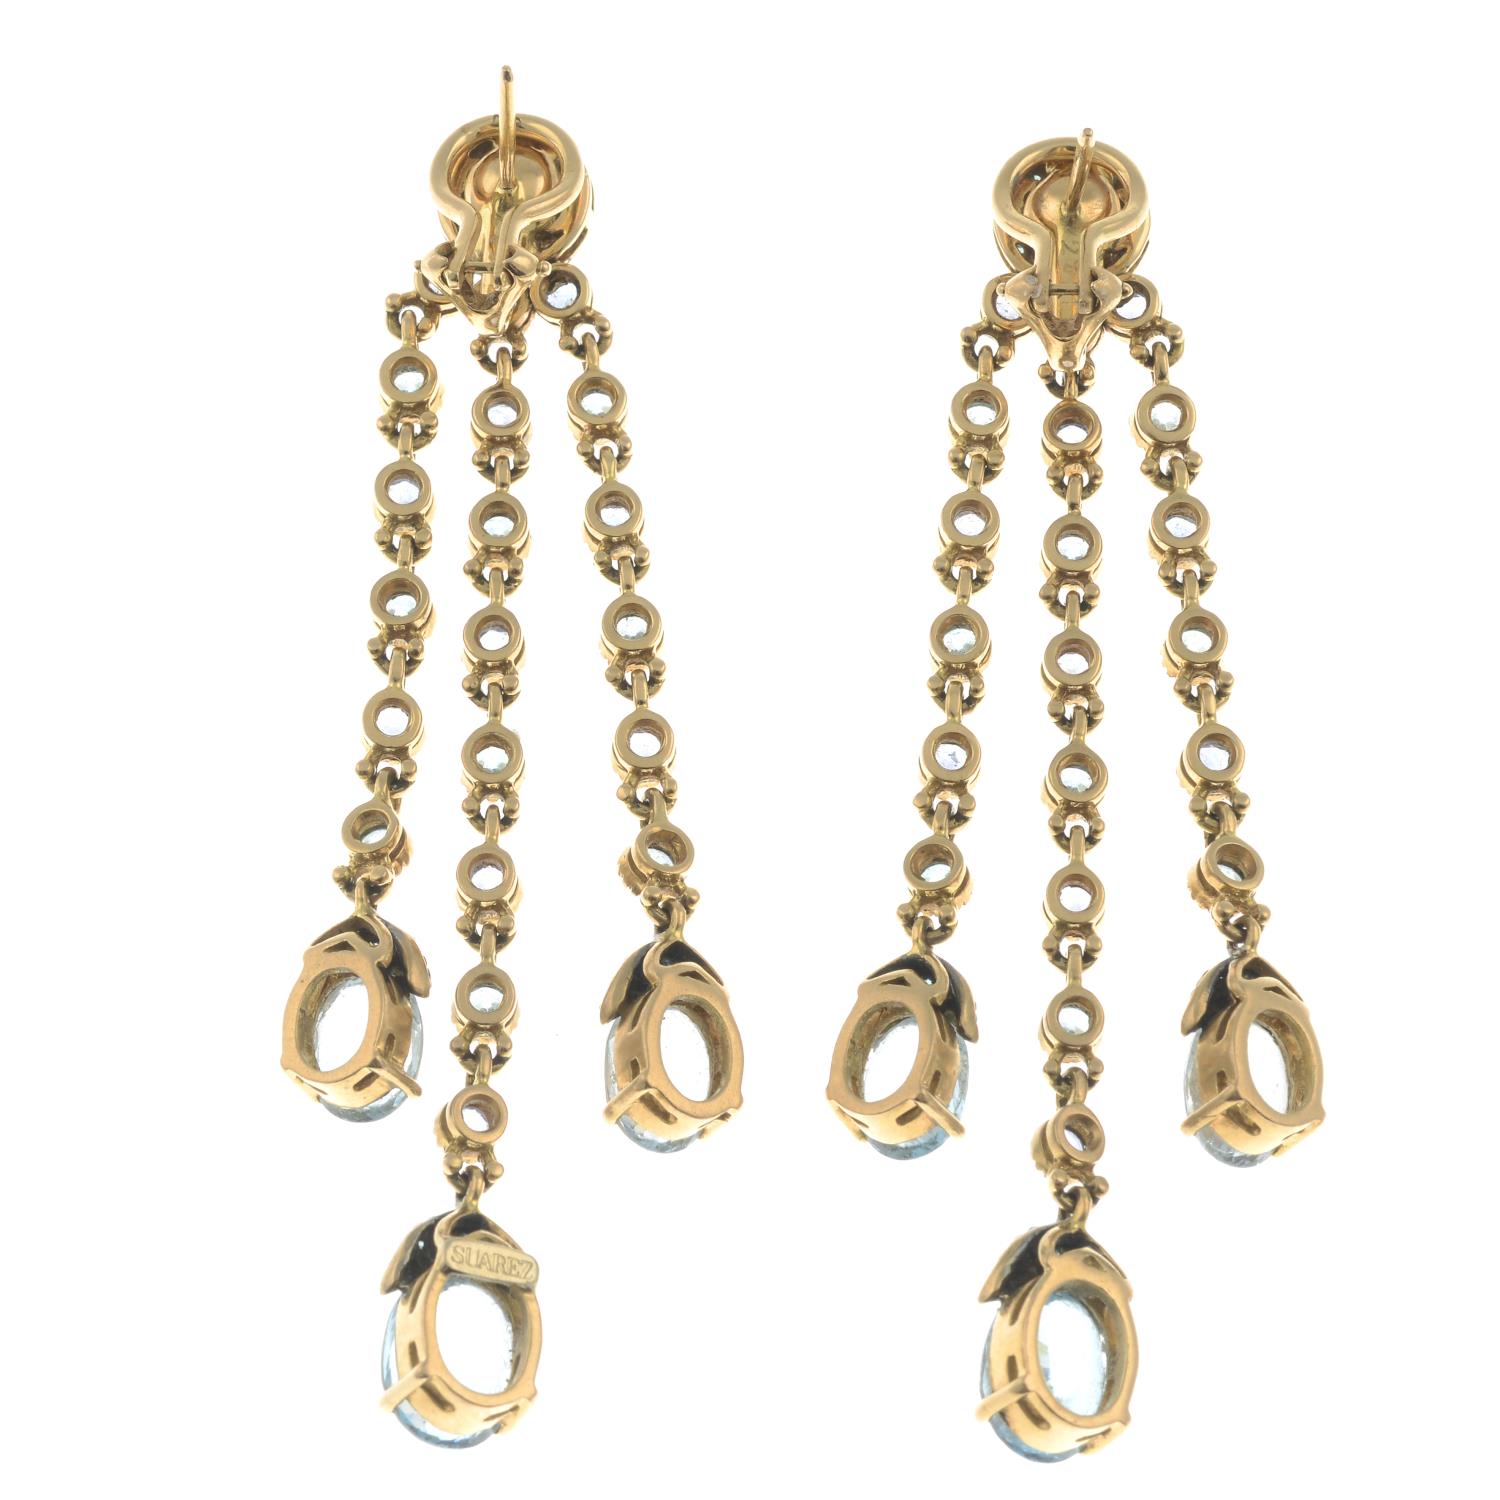 A pair of drop earrings. - Image 2 of 2